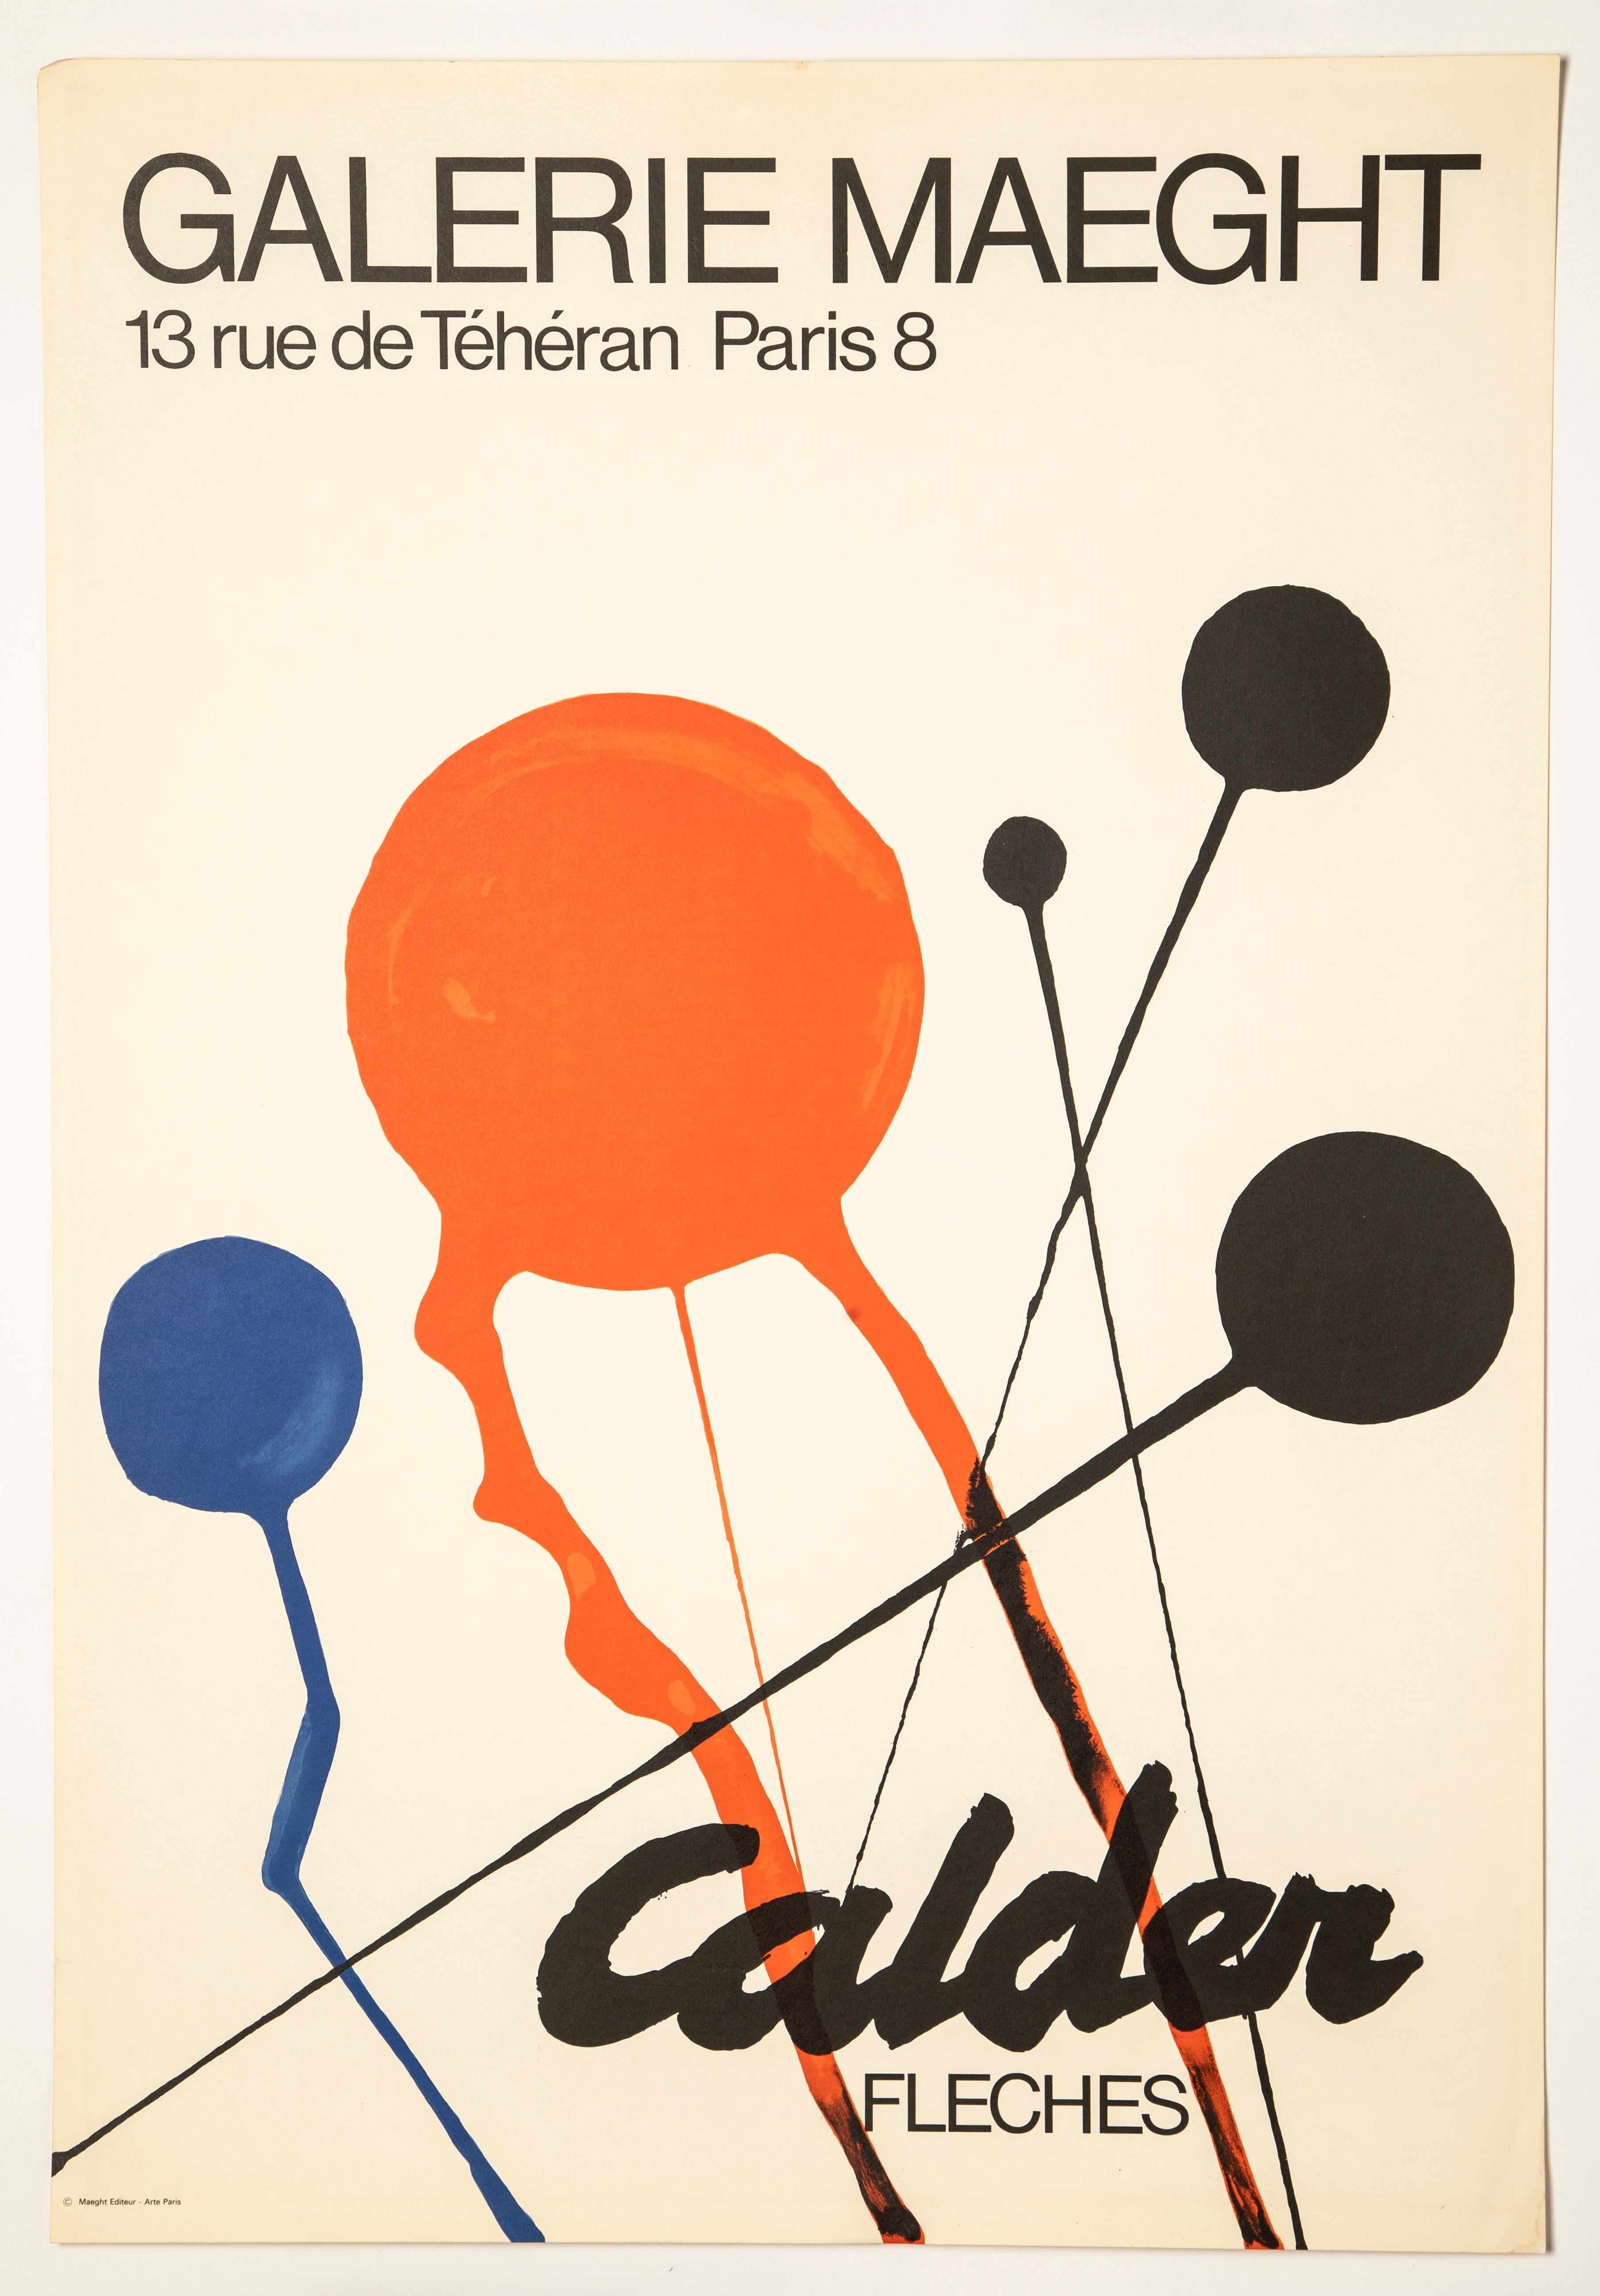 ALEXANDER CALDER - FLECHES (GALERIE MAEGHT), 1970 - LITHOGRAPHIC POSTER
Alexander Calder (1898-1976)
Fleches (Galerie Maeght, 1970)
Printed for Alexander Calder Exhibition, Titled 